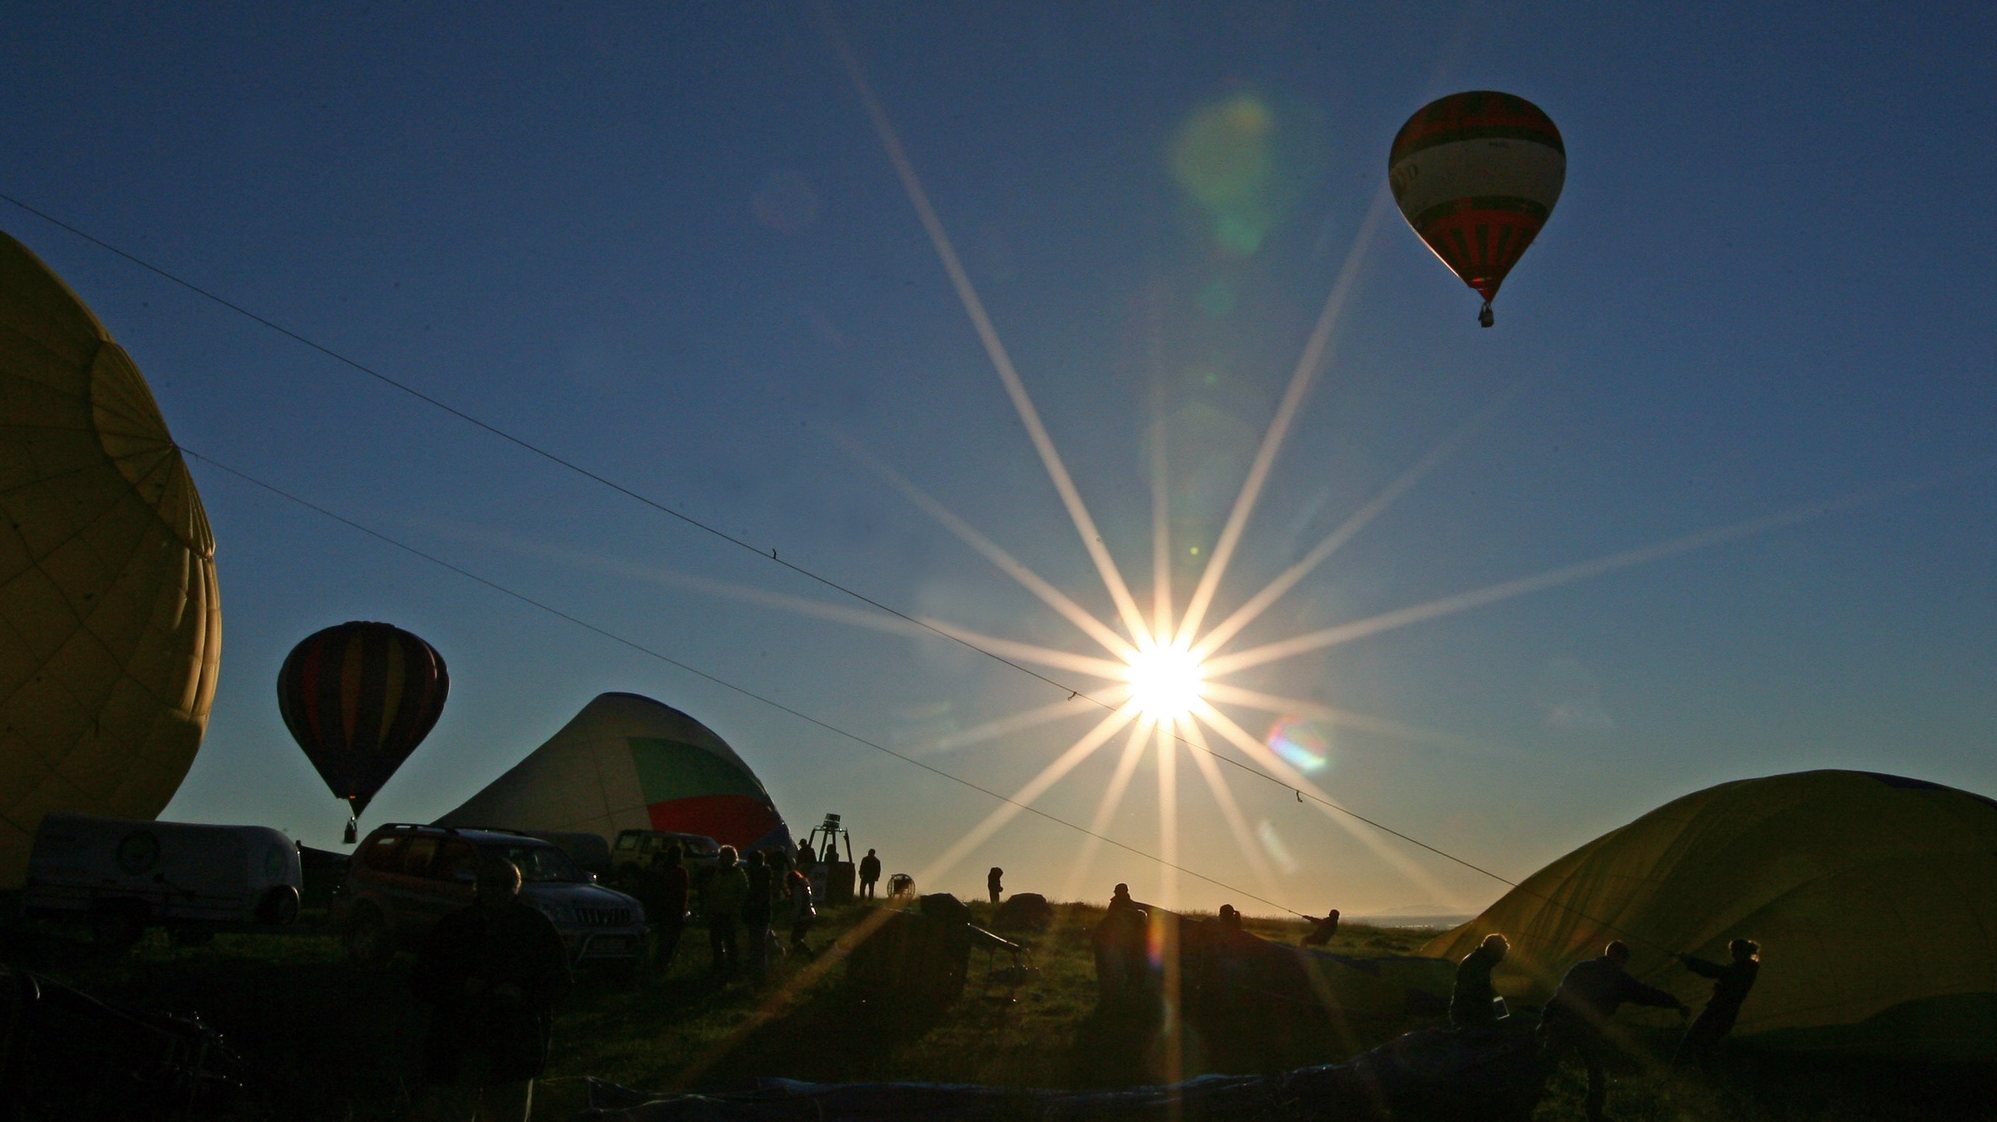 Balonistas durante um voo no âmbito do 16a Edição do Festival Internacional de Balões de Ar Quente - Elvas Património da Humanidade. Elvas, 13 de novembro de 2012. NUNO VEIGA/LUSA